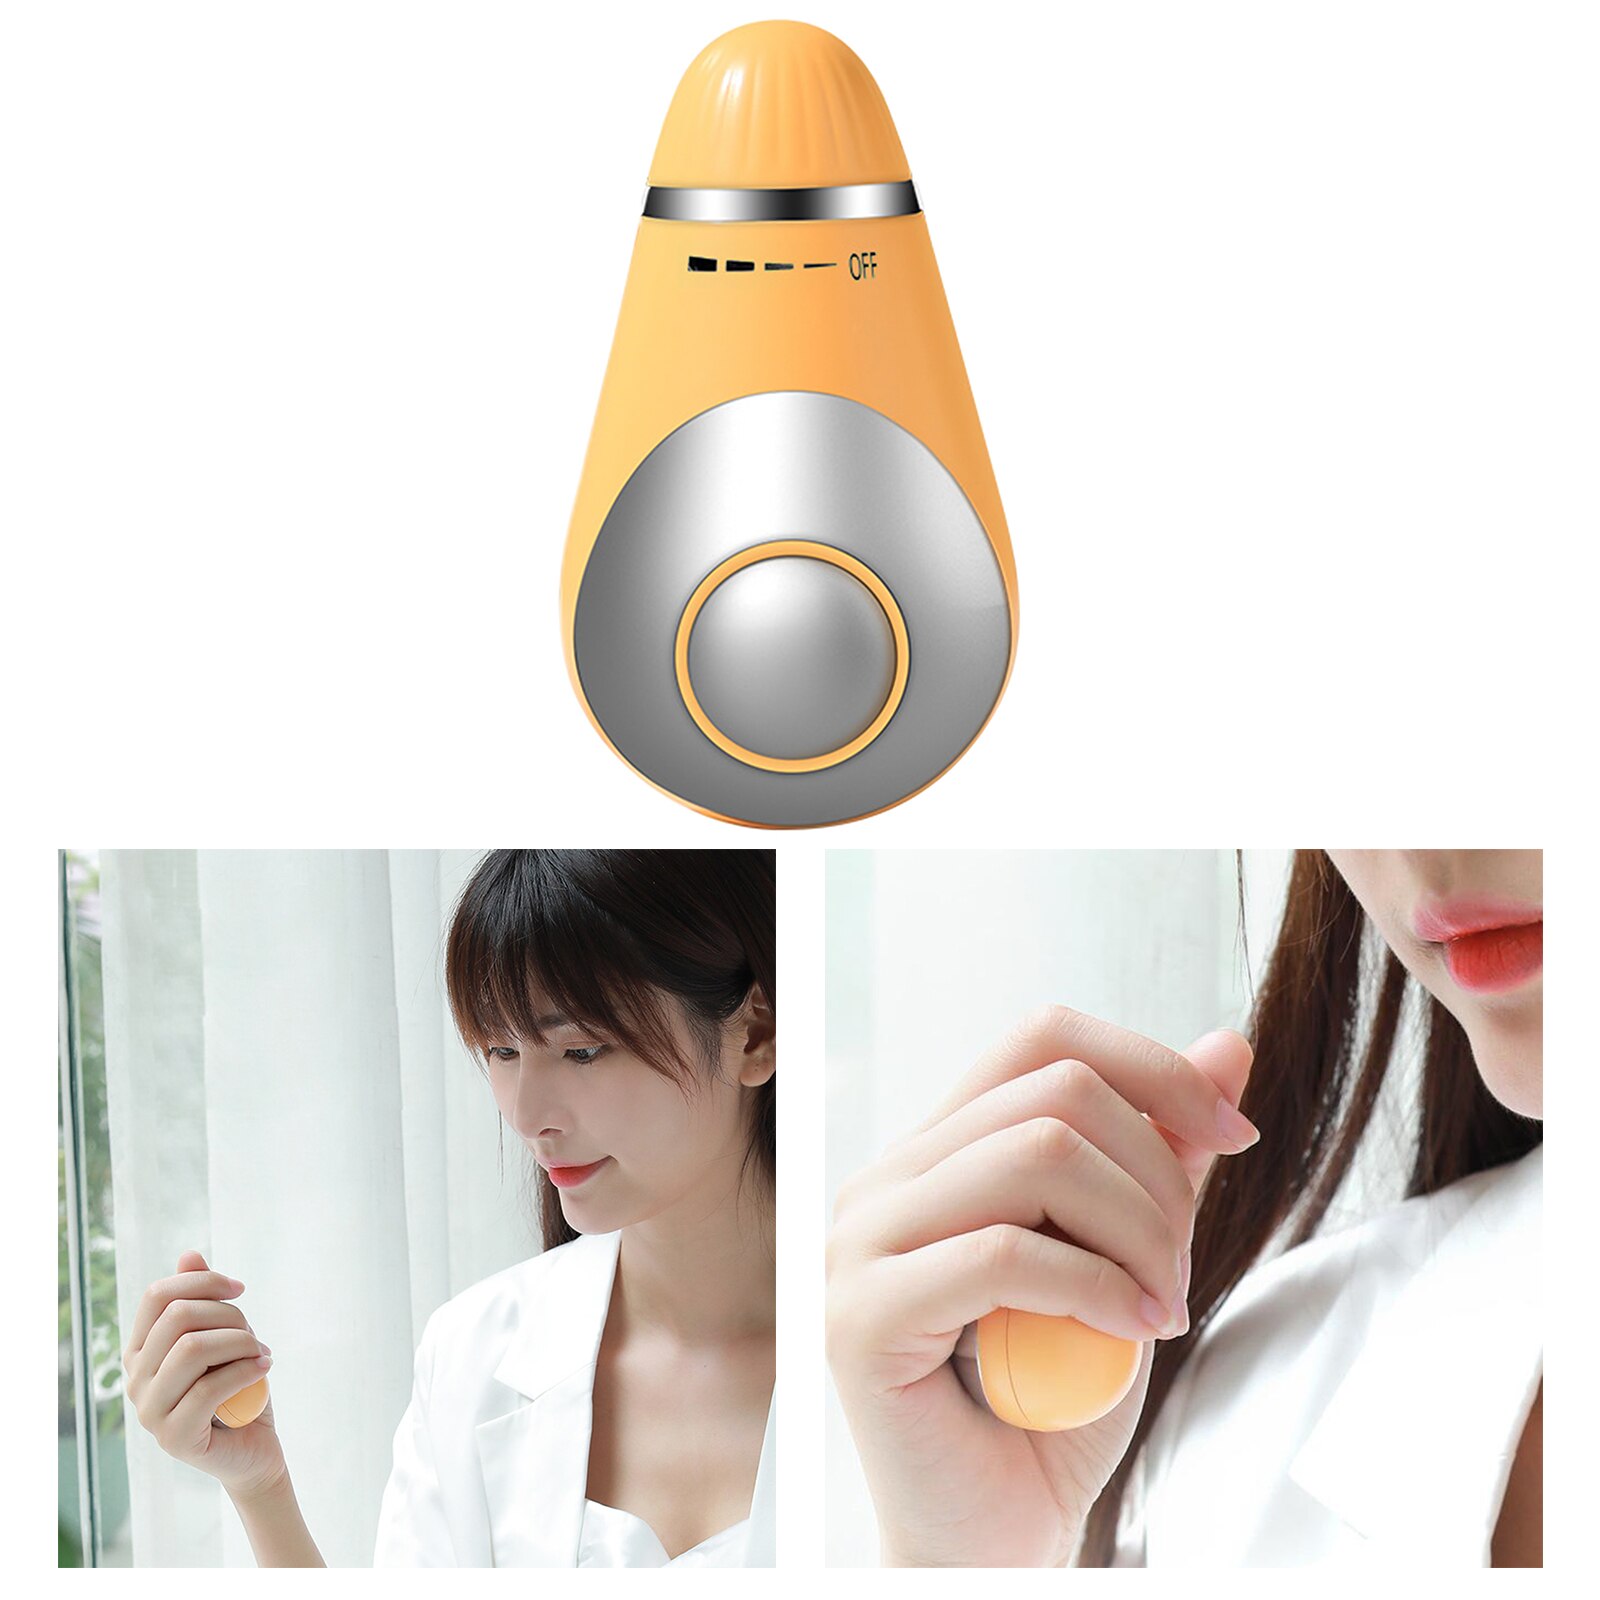 Bærbart håndholdt søvnhjælpemiddel, mikrostrøm intelligent søvnenhed hurtigt værktøj til søvnhjælp: Orange